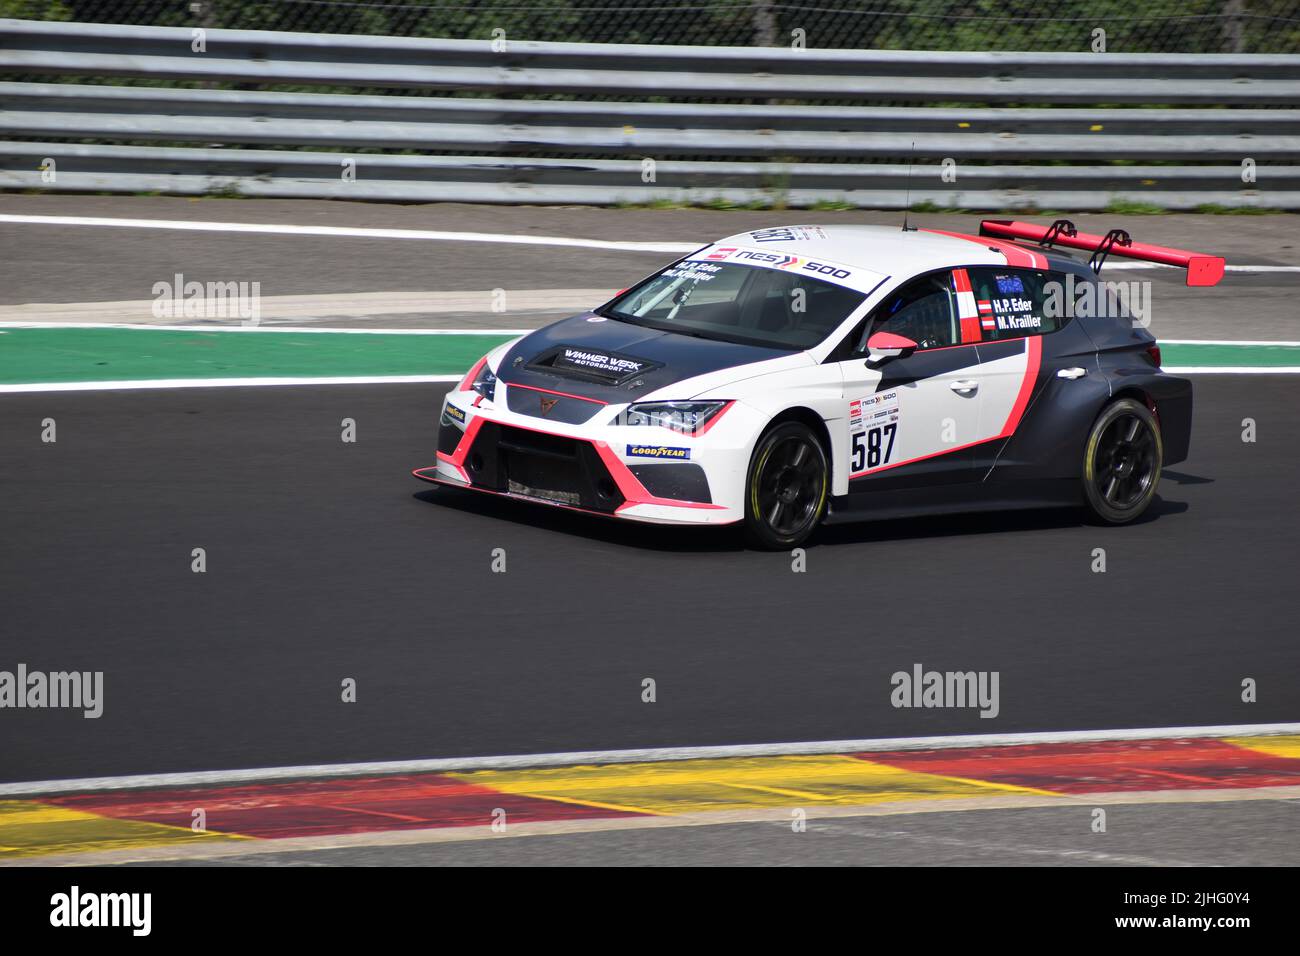 a car racing at spa francorchamps Stock Photo